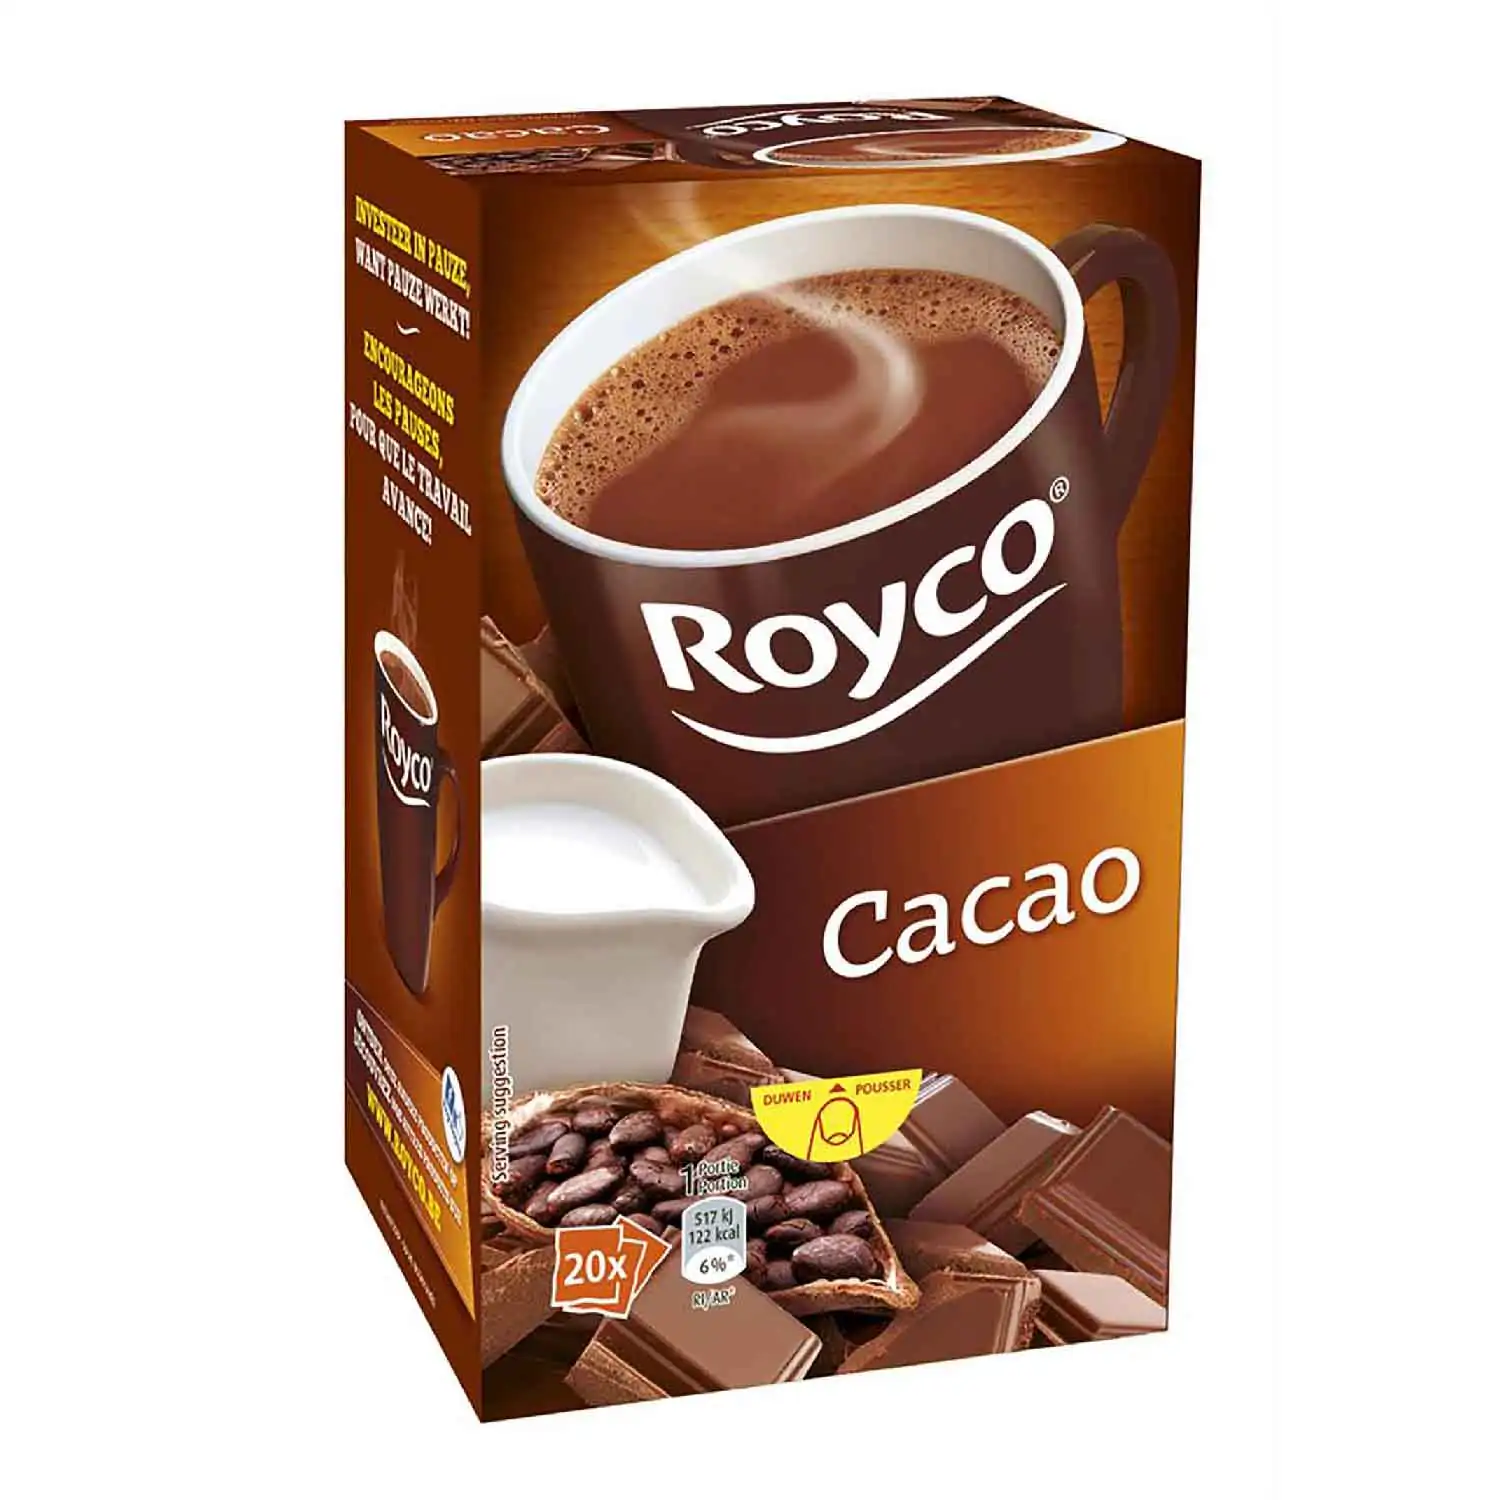 20x Royco cacao 31g